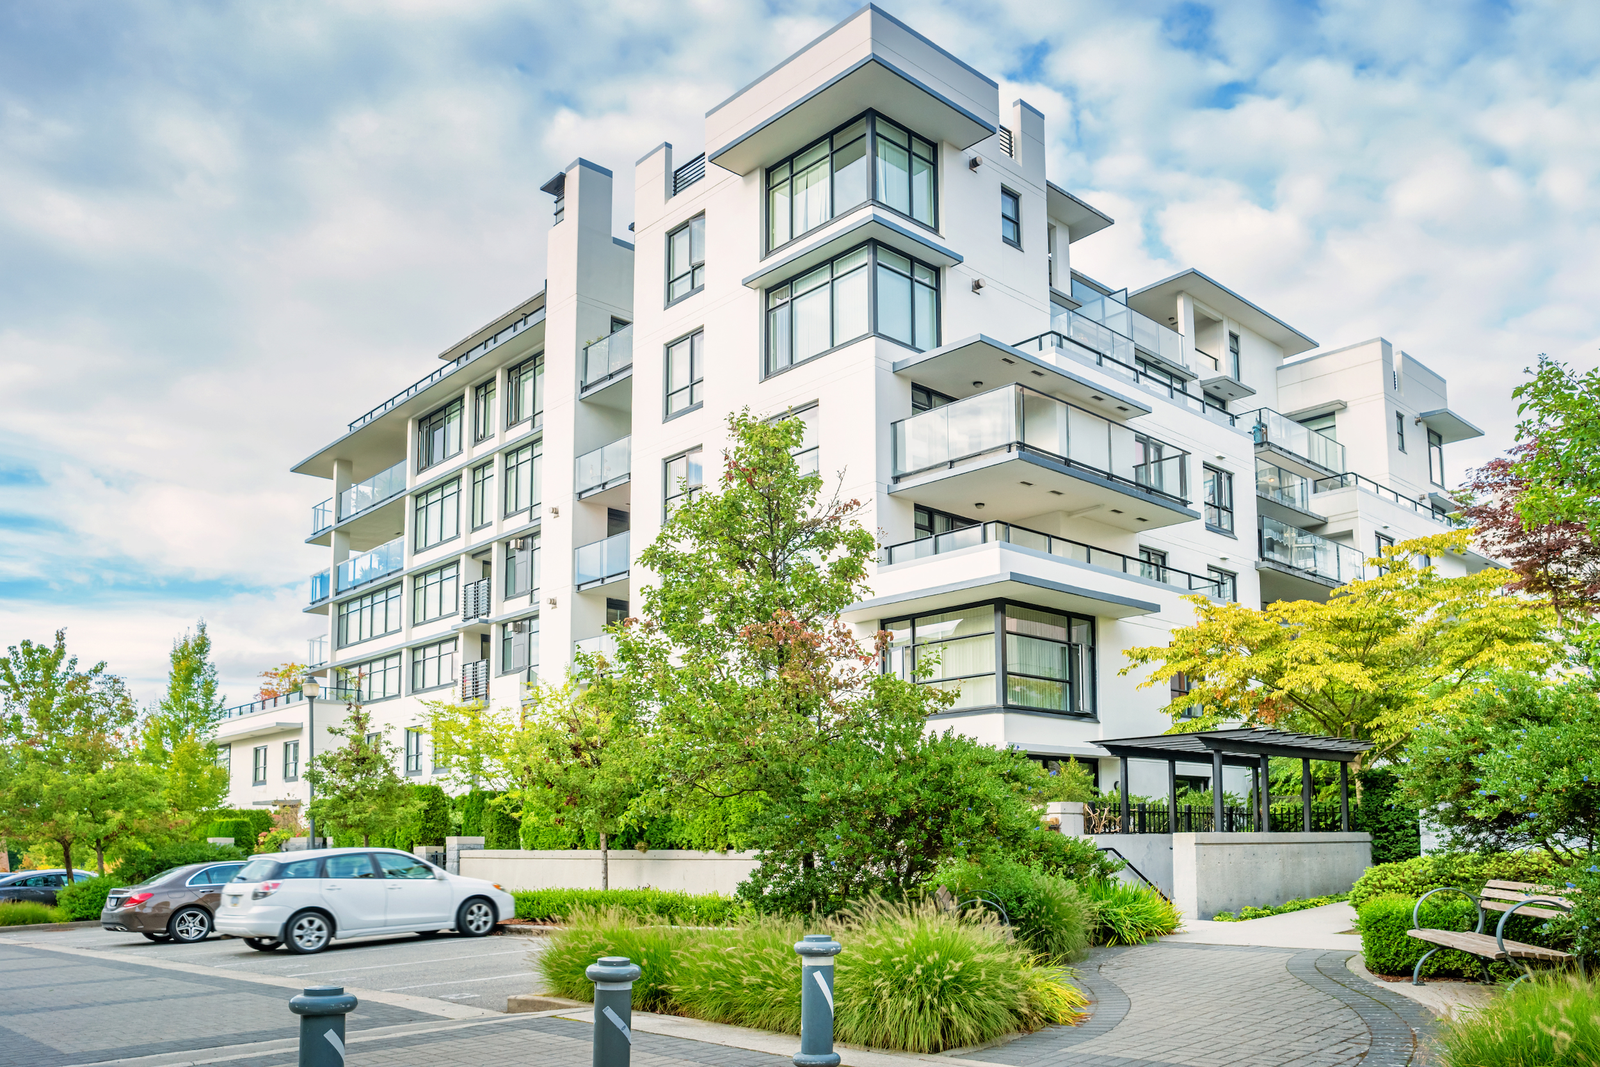 Buy a condo in North Vancouver | North Vancouver Realtor | North Vancouver Homes for Sale | North Vancouver Real Estate Team